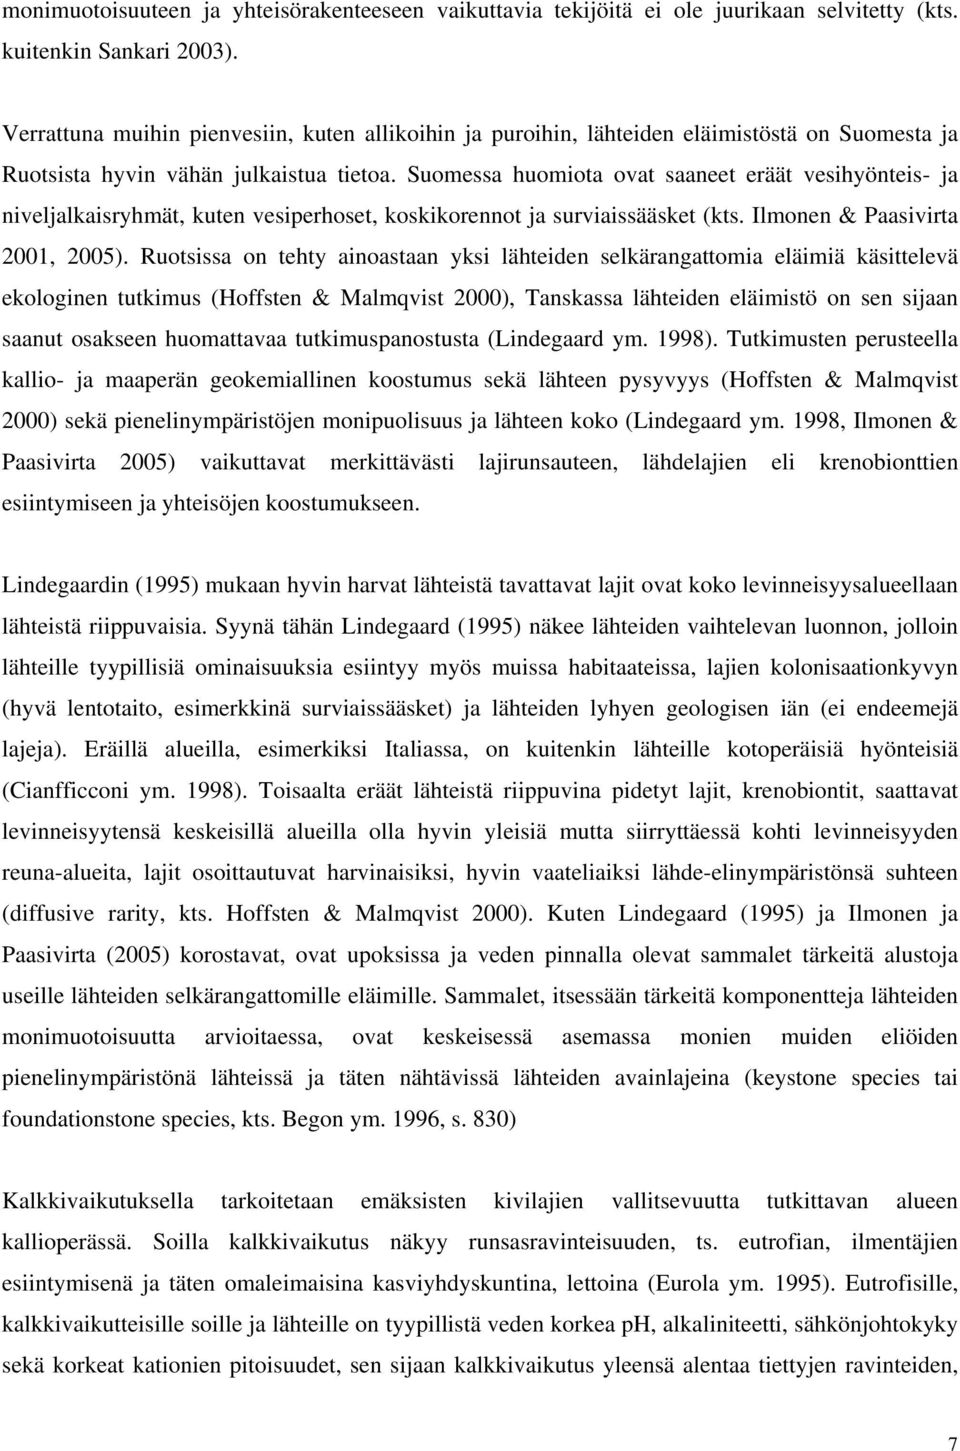 Suomessa huomiota ovat saaneet eräät vesihyönteis- ja niveljalkaisryhmät, kuten vesiperhoset, koskikorennot ja surviaissääsket (kts. Ilmonen & Paasivirta 2001, 2005).